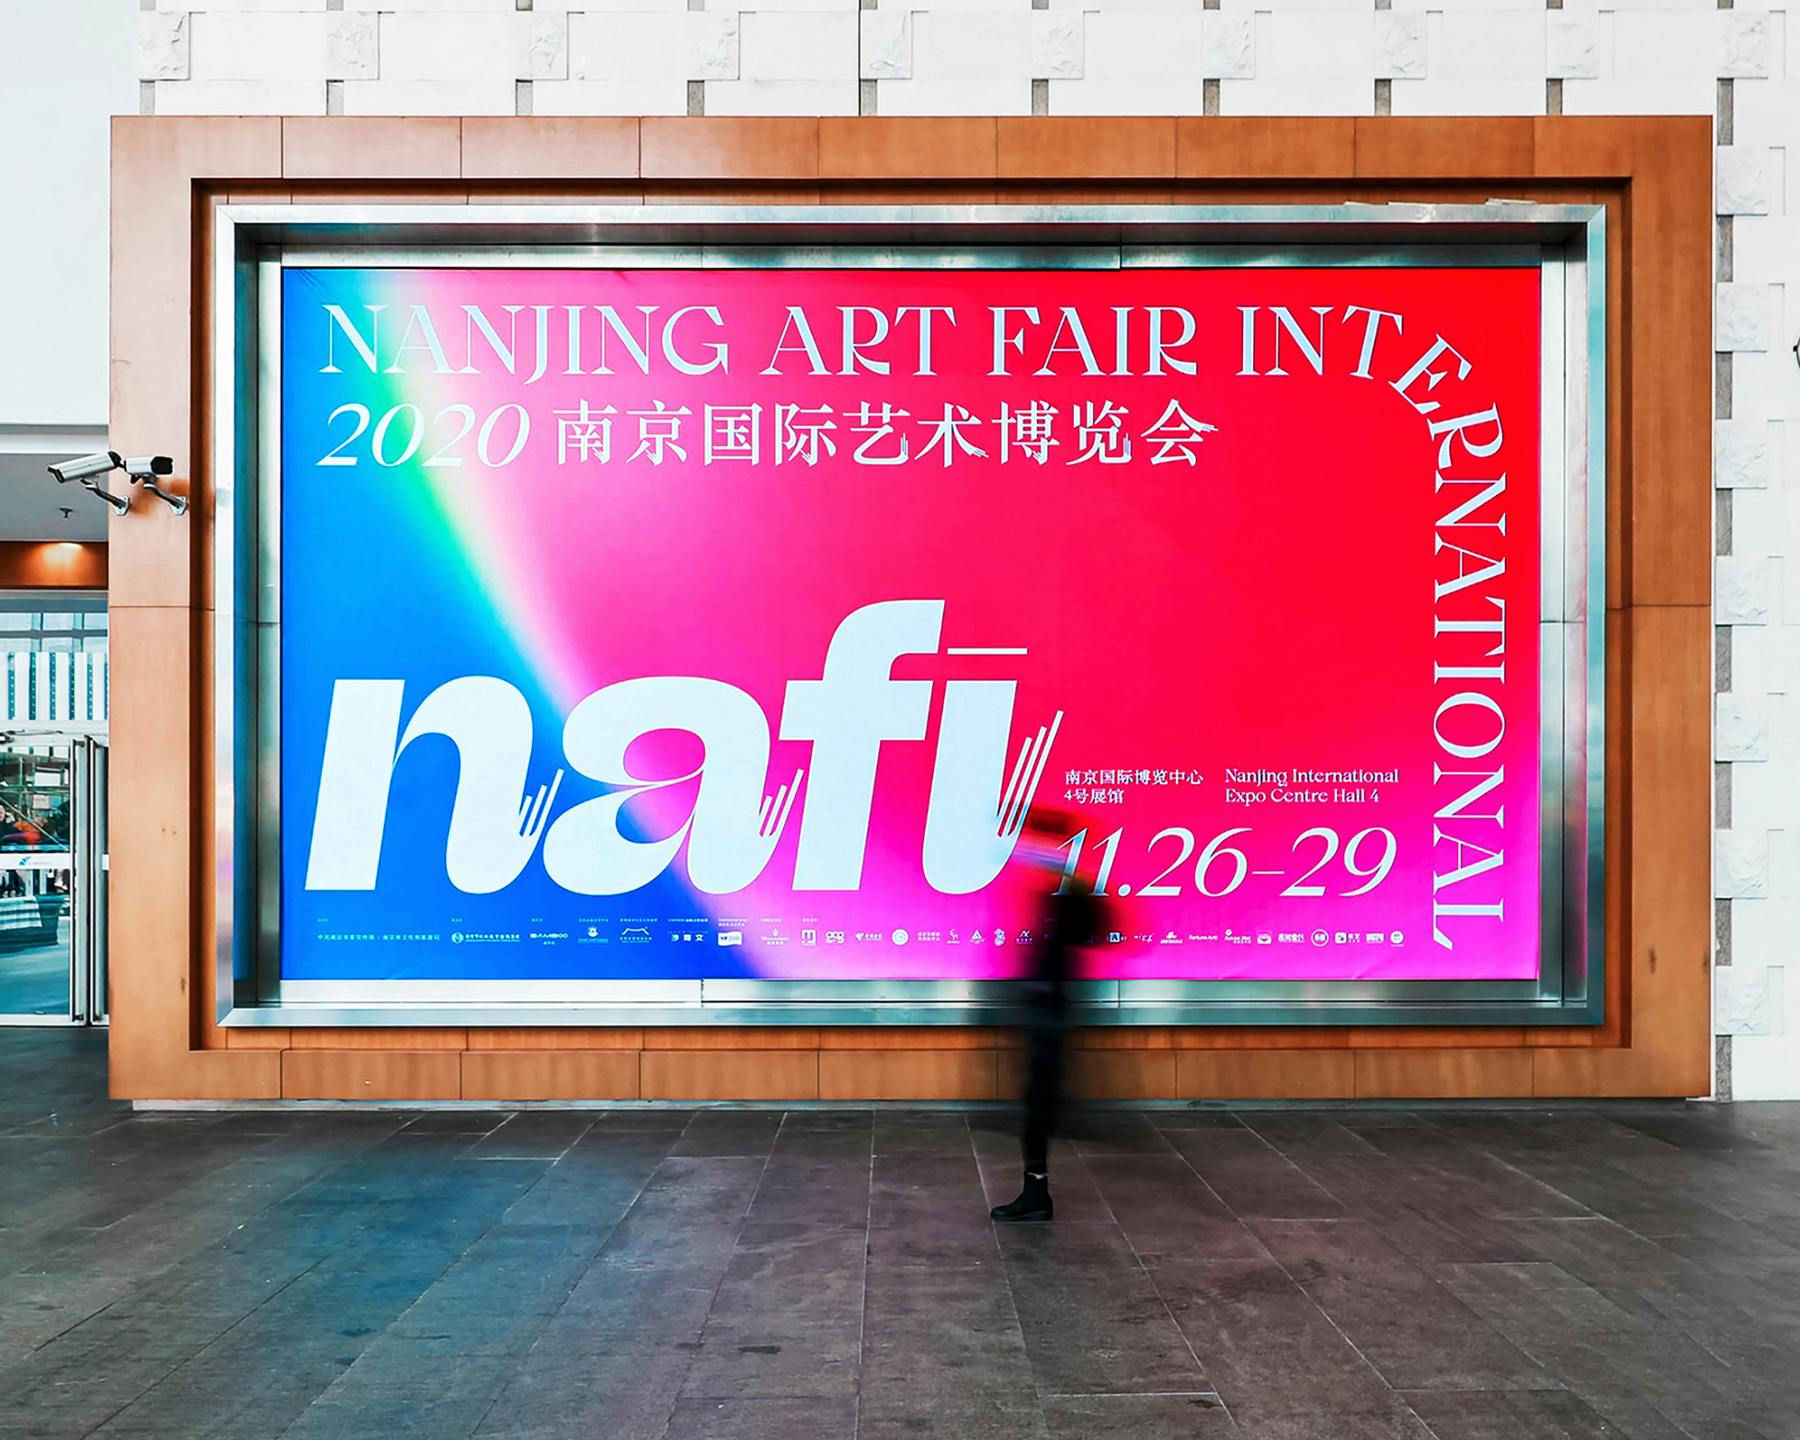 Nanjing Art Fair International & Beatrice Display